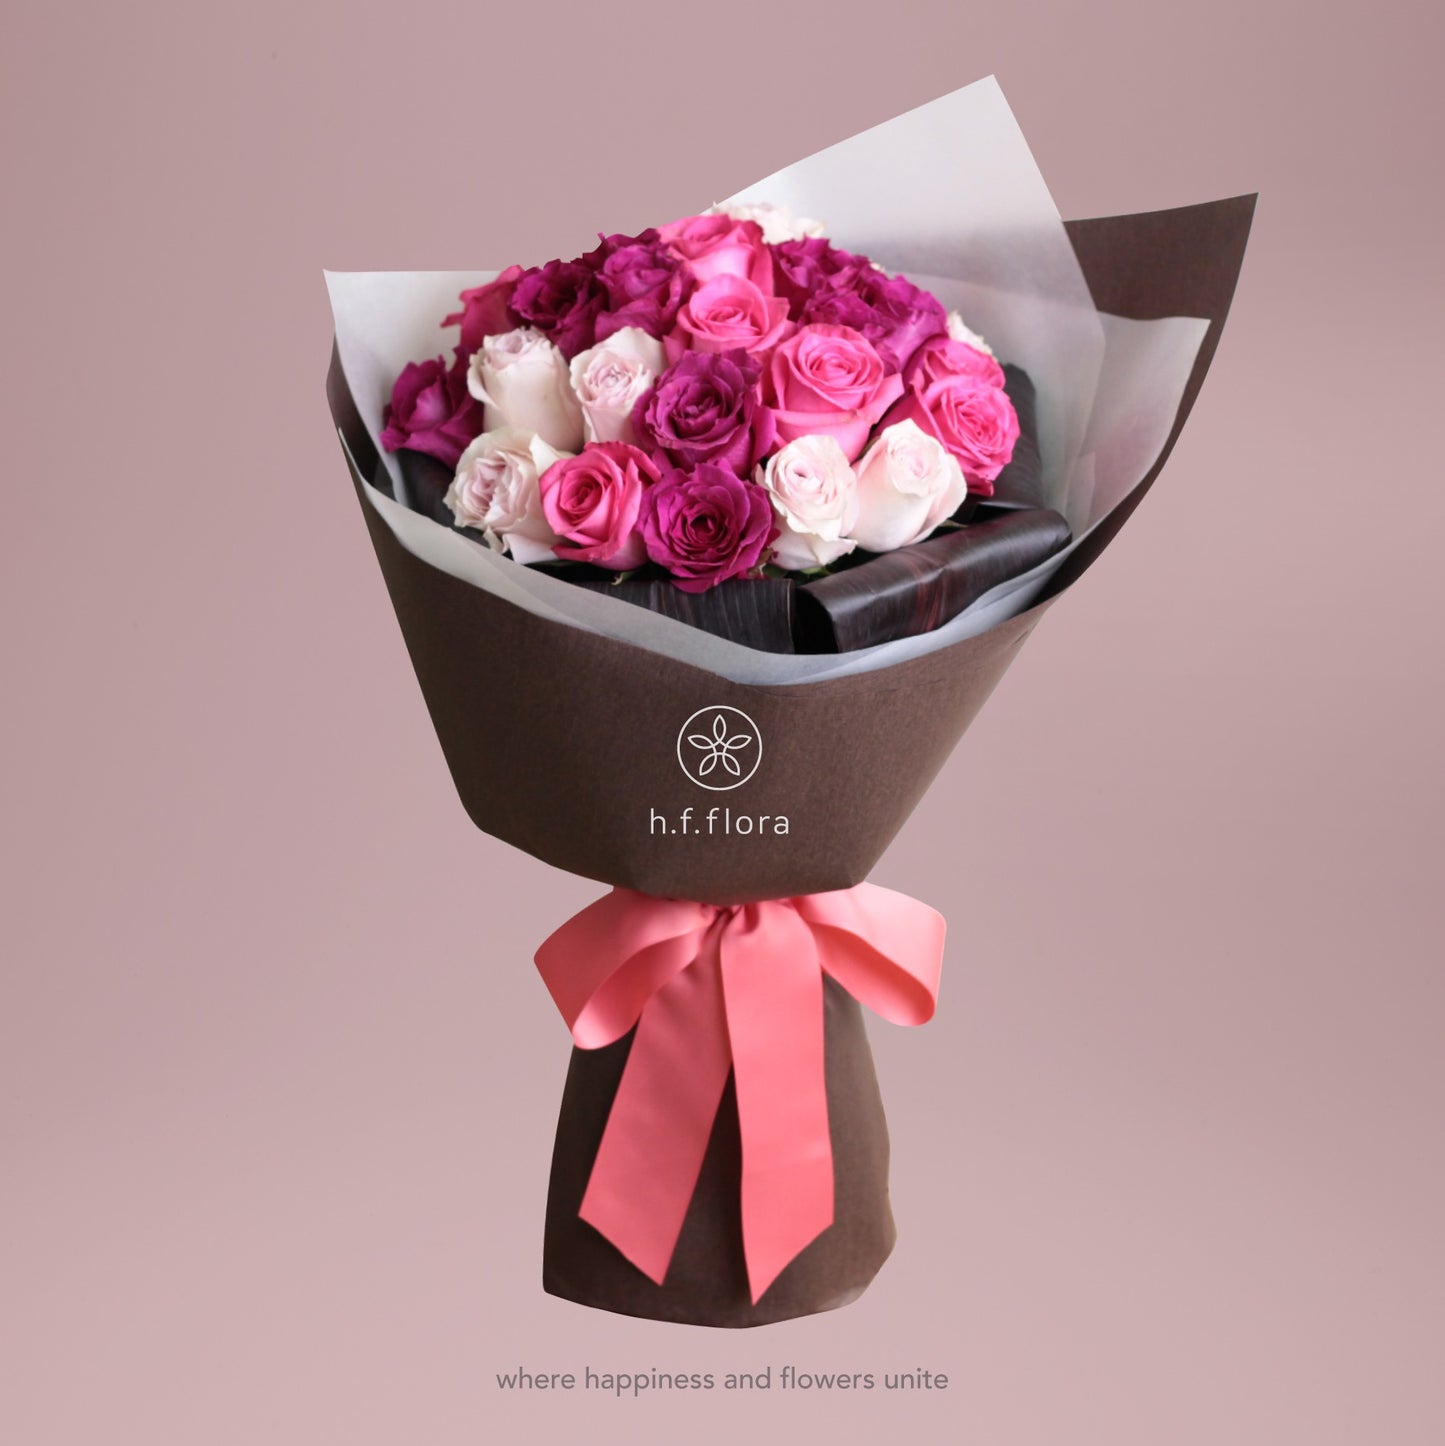 [h.f.flora x Phoenix Sweets] Bouquet & Cake Combo $1880 set